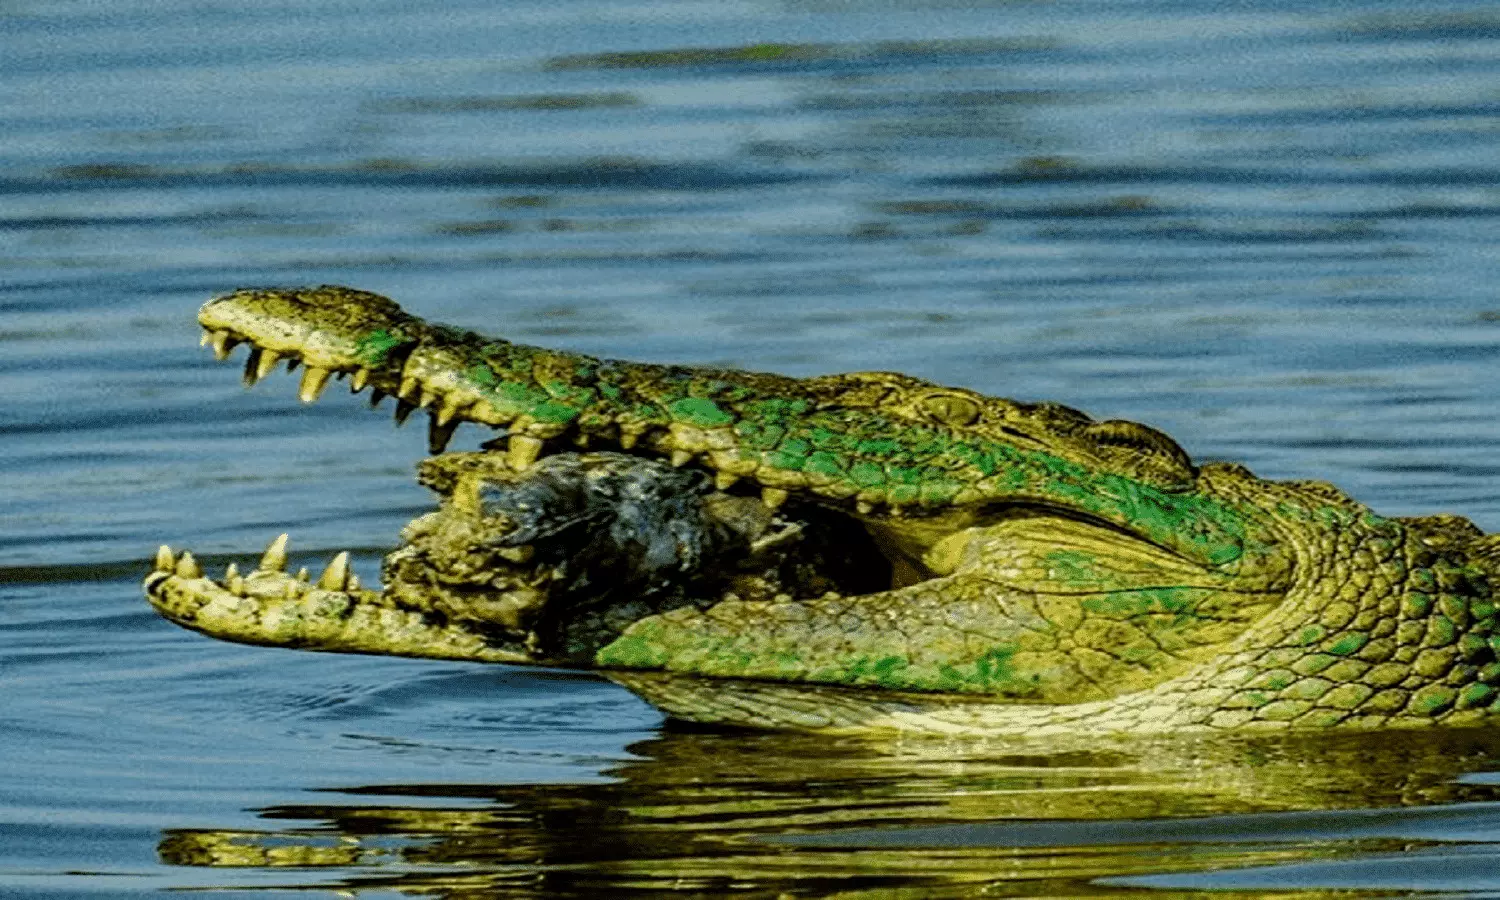 Crocodile amazing fact